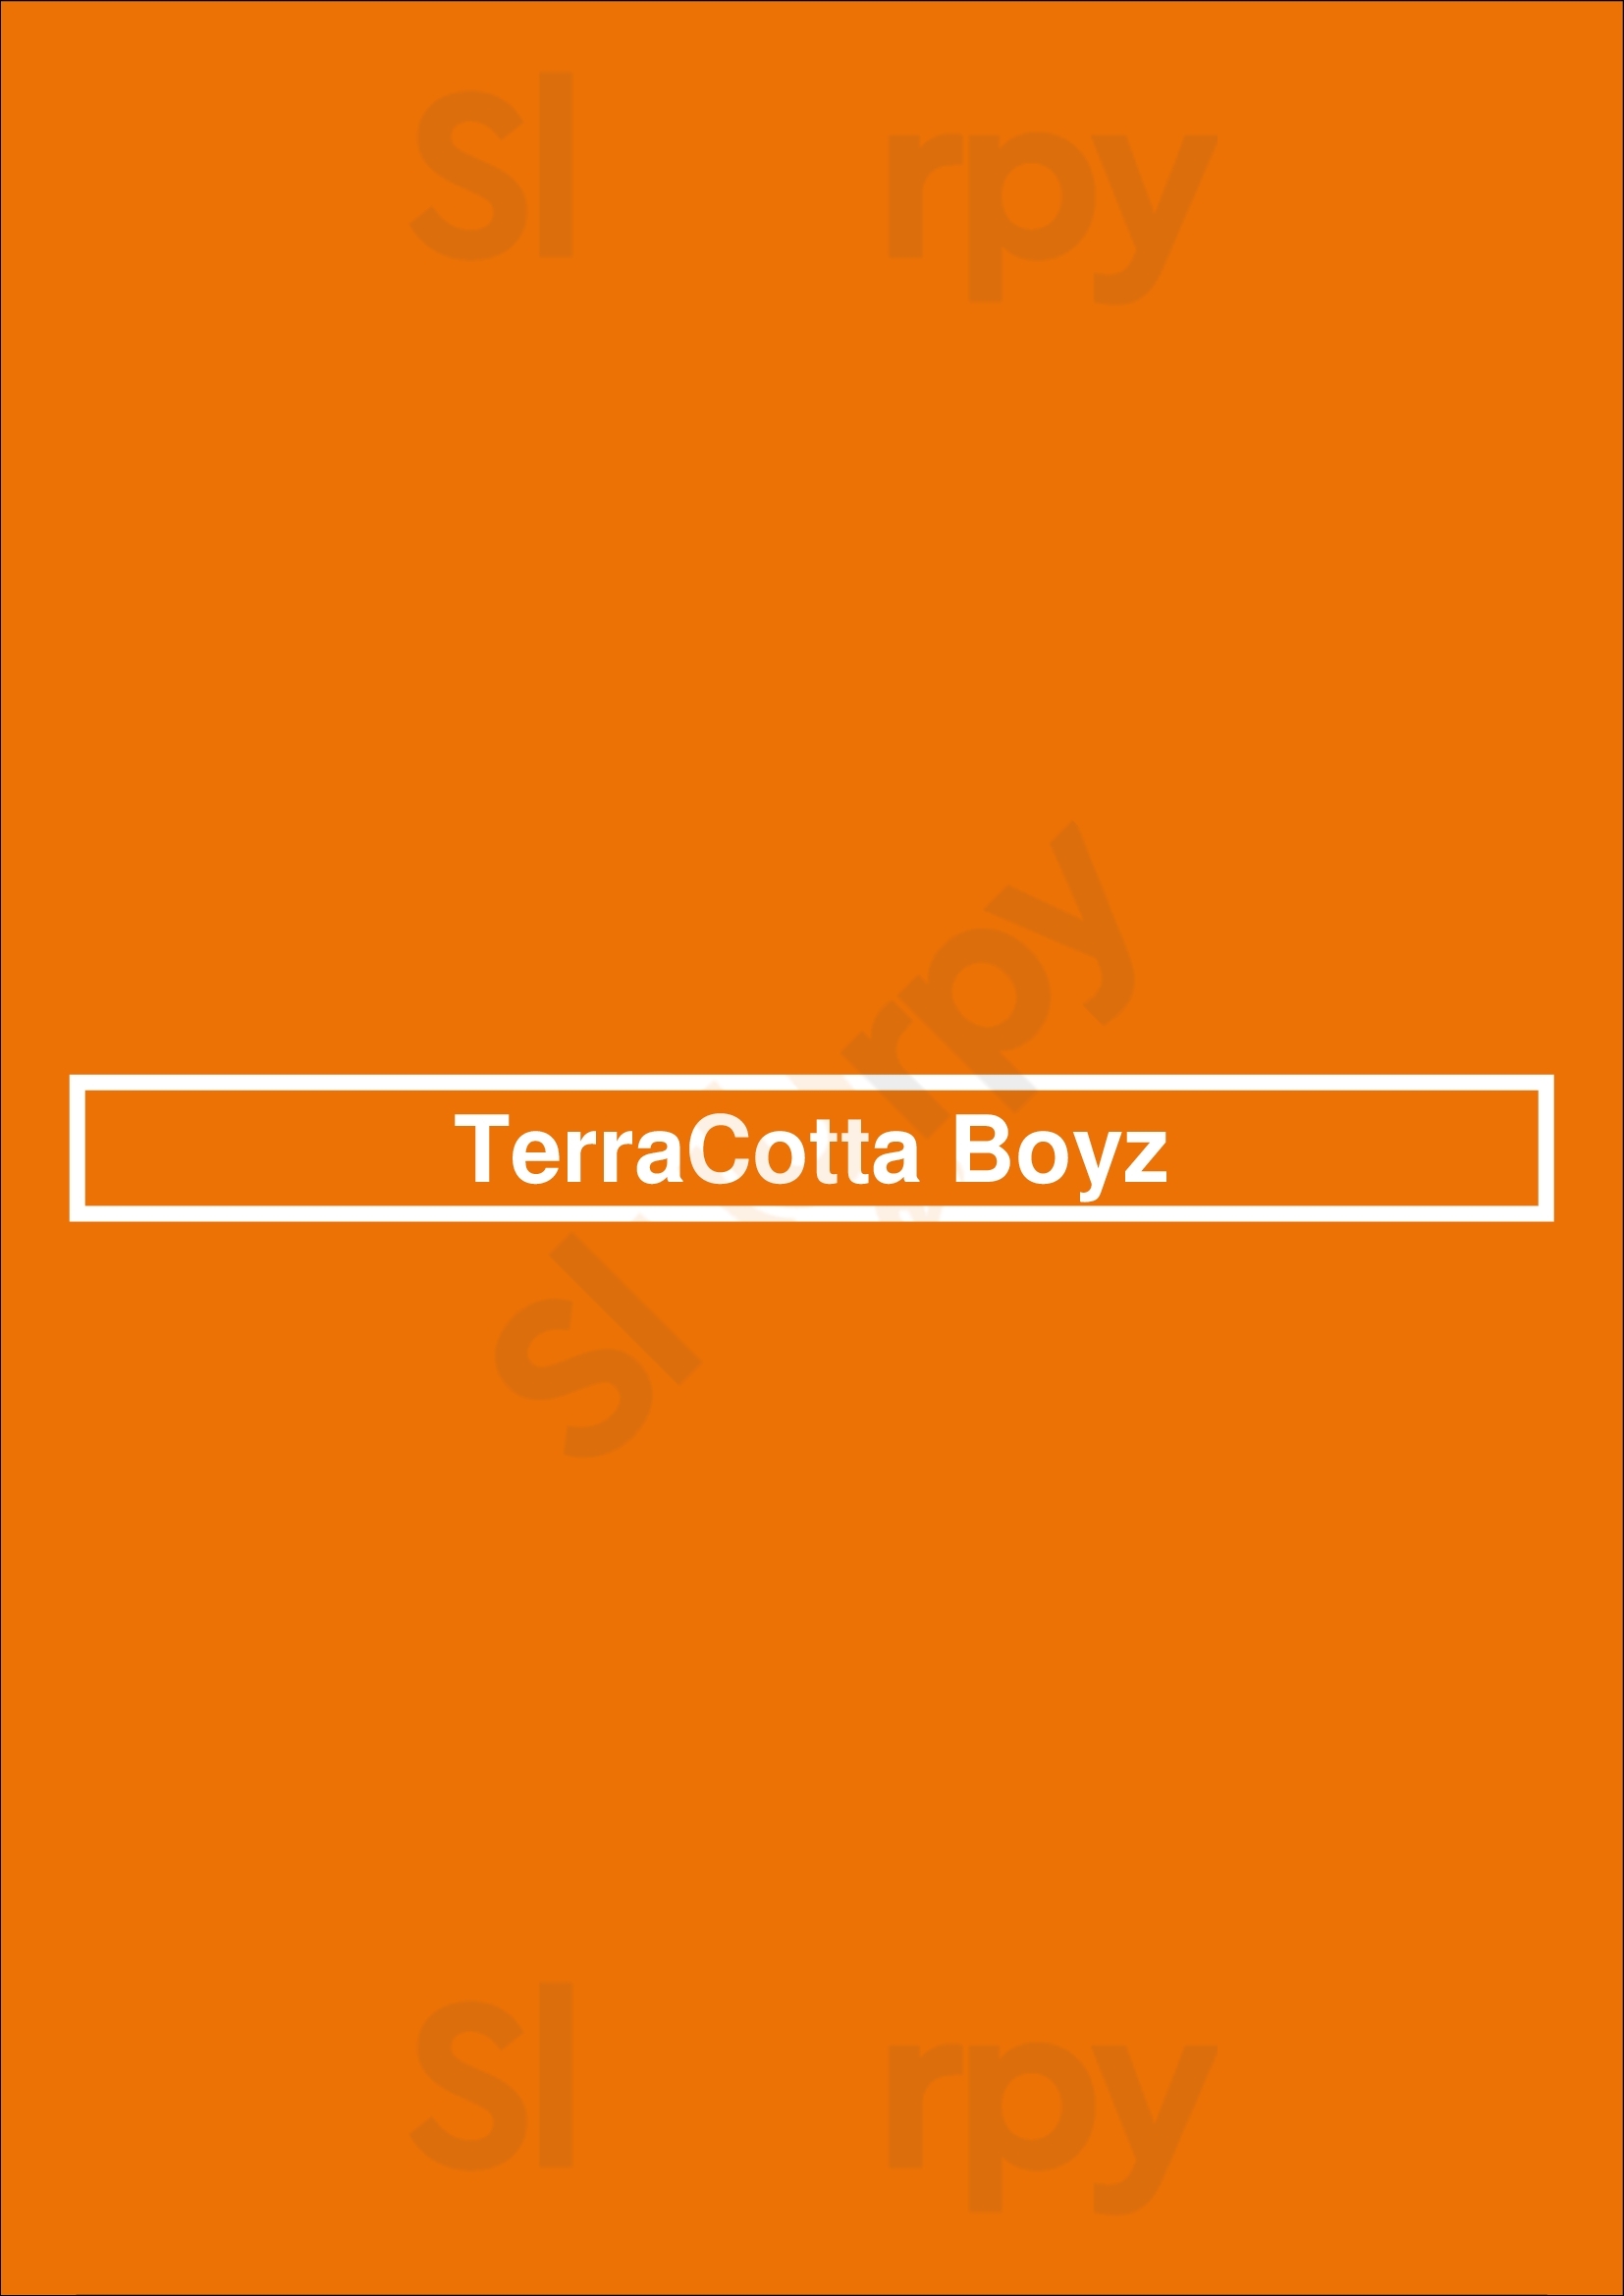 Terracotta Boyz Burnaby Menu - 1